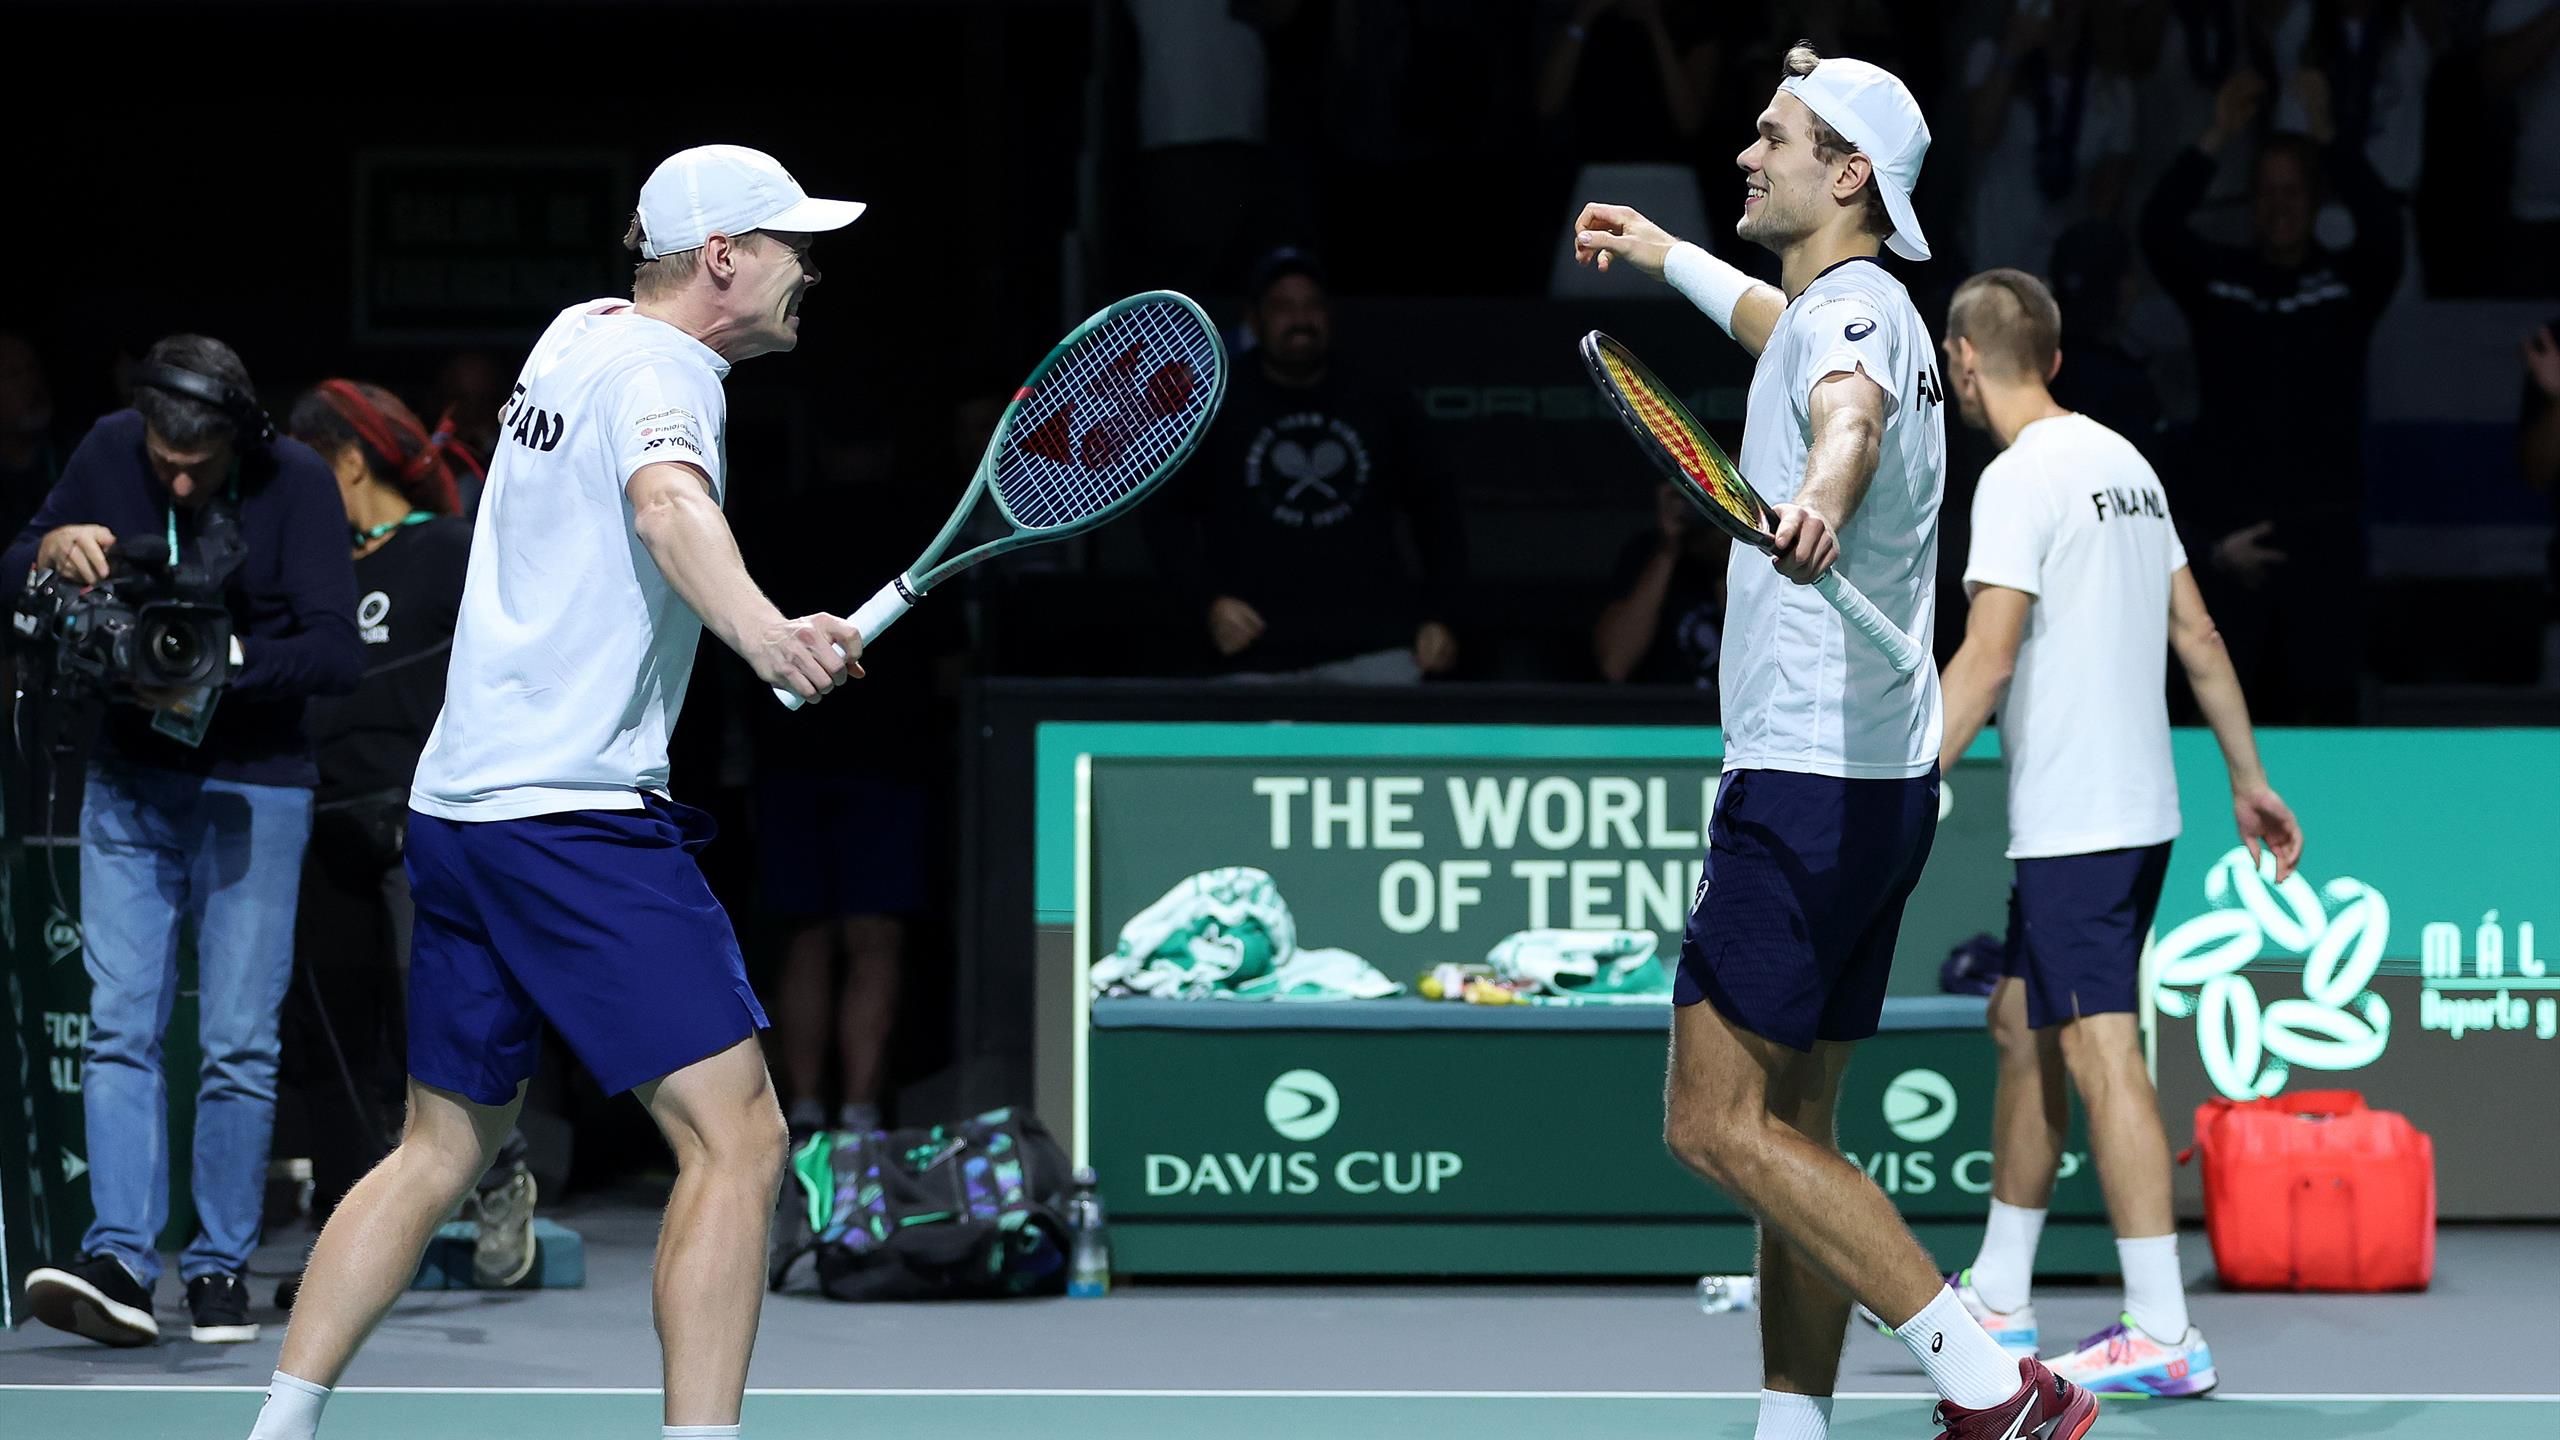 Davis Cup 2023 Finnland schockt Kanada und zieht ins Halbfinale ein - Doppel holt entscheidenden Punkt - Tennis Video